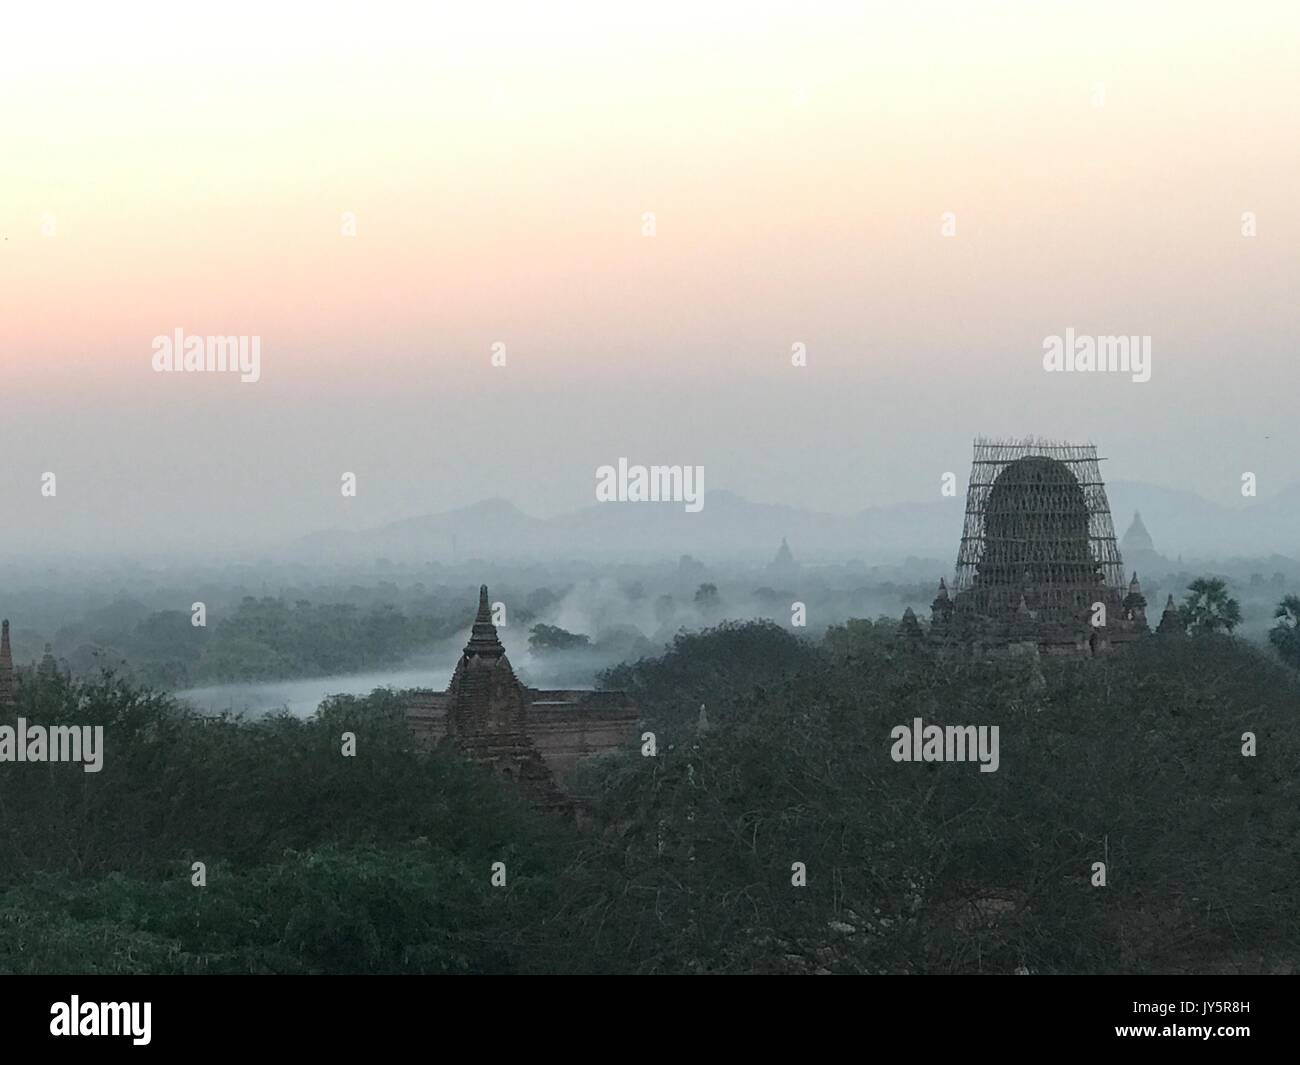 Fichier - File photo datée du 24 février 2017 montrant l'ancienne ville royale de Bagan au Myanmar au lever du soleil. Bagan est visant à être classé par l'UNESCO comme site du patrimoine mondial. Cela peut être difficile en raison de l'inadéquation des rénovations effectuées au cours des dernières années. Cependant, il y a maintenant un peu d'espoir. Photo : Christoph Sator/dpa Banque D'Images